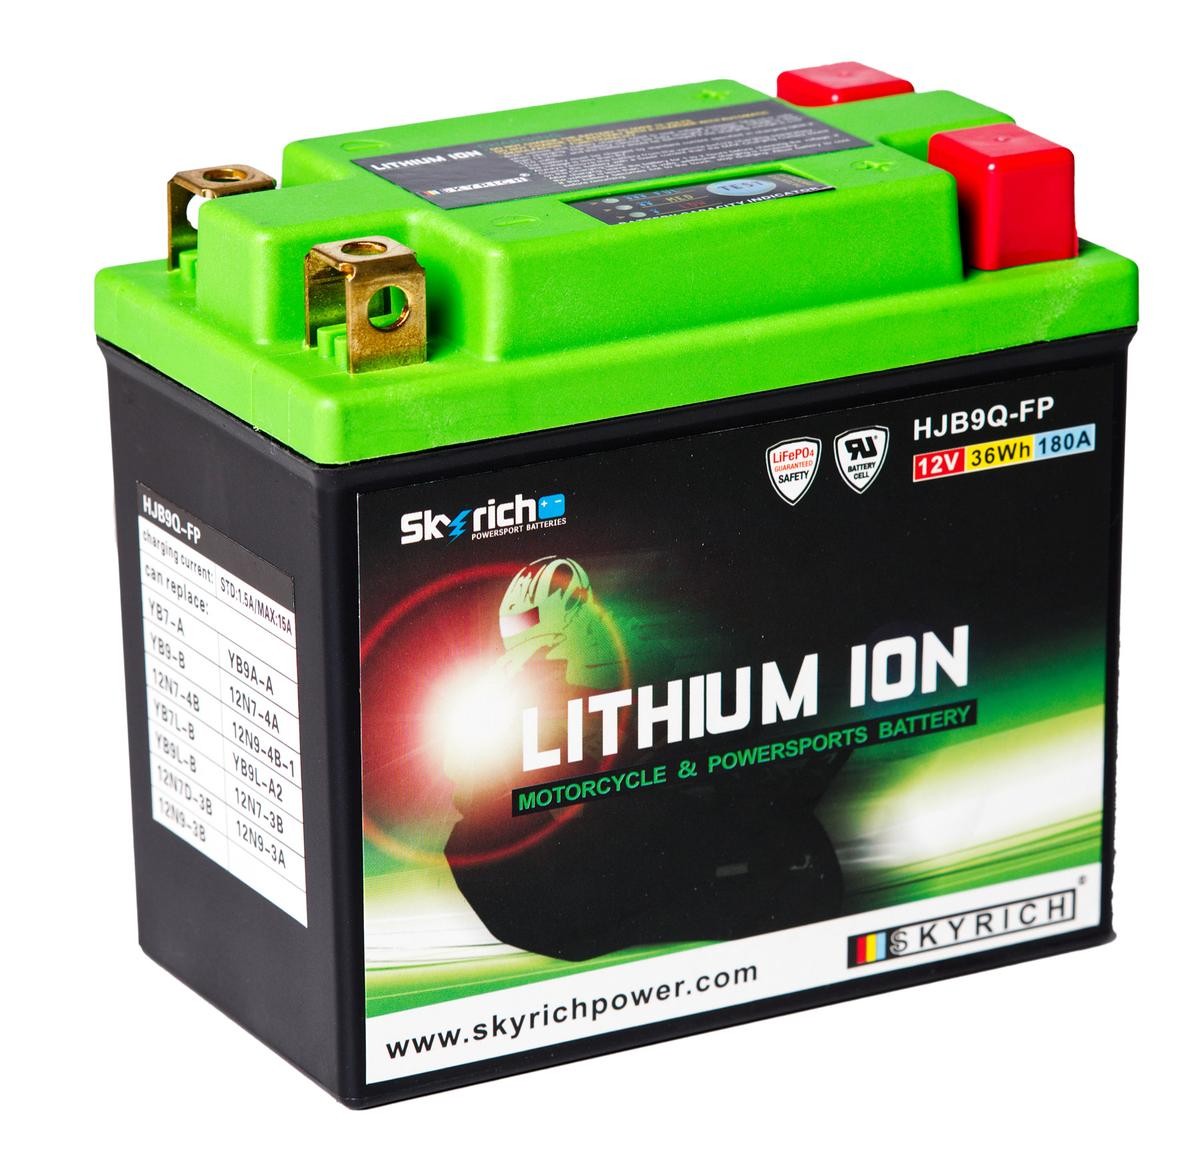 HONDA CB (CB 1 - CB 500) Batterie 12V 3Ah 180A N Li-Ionen-Batterie SKYRICH LITHIUM ION HJB9Q-FP